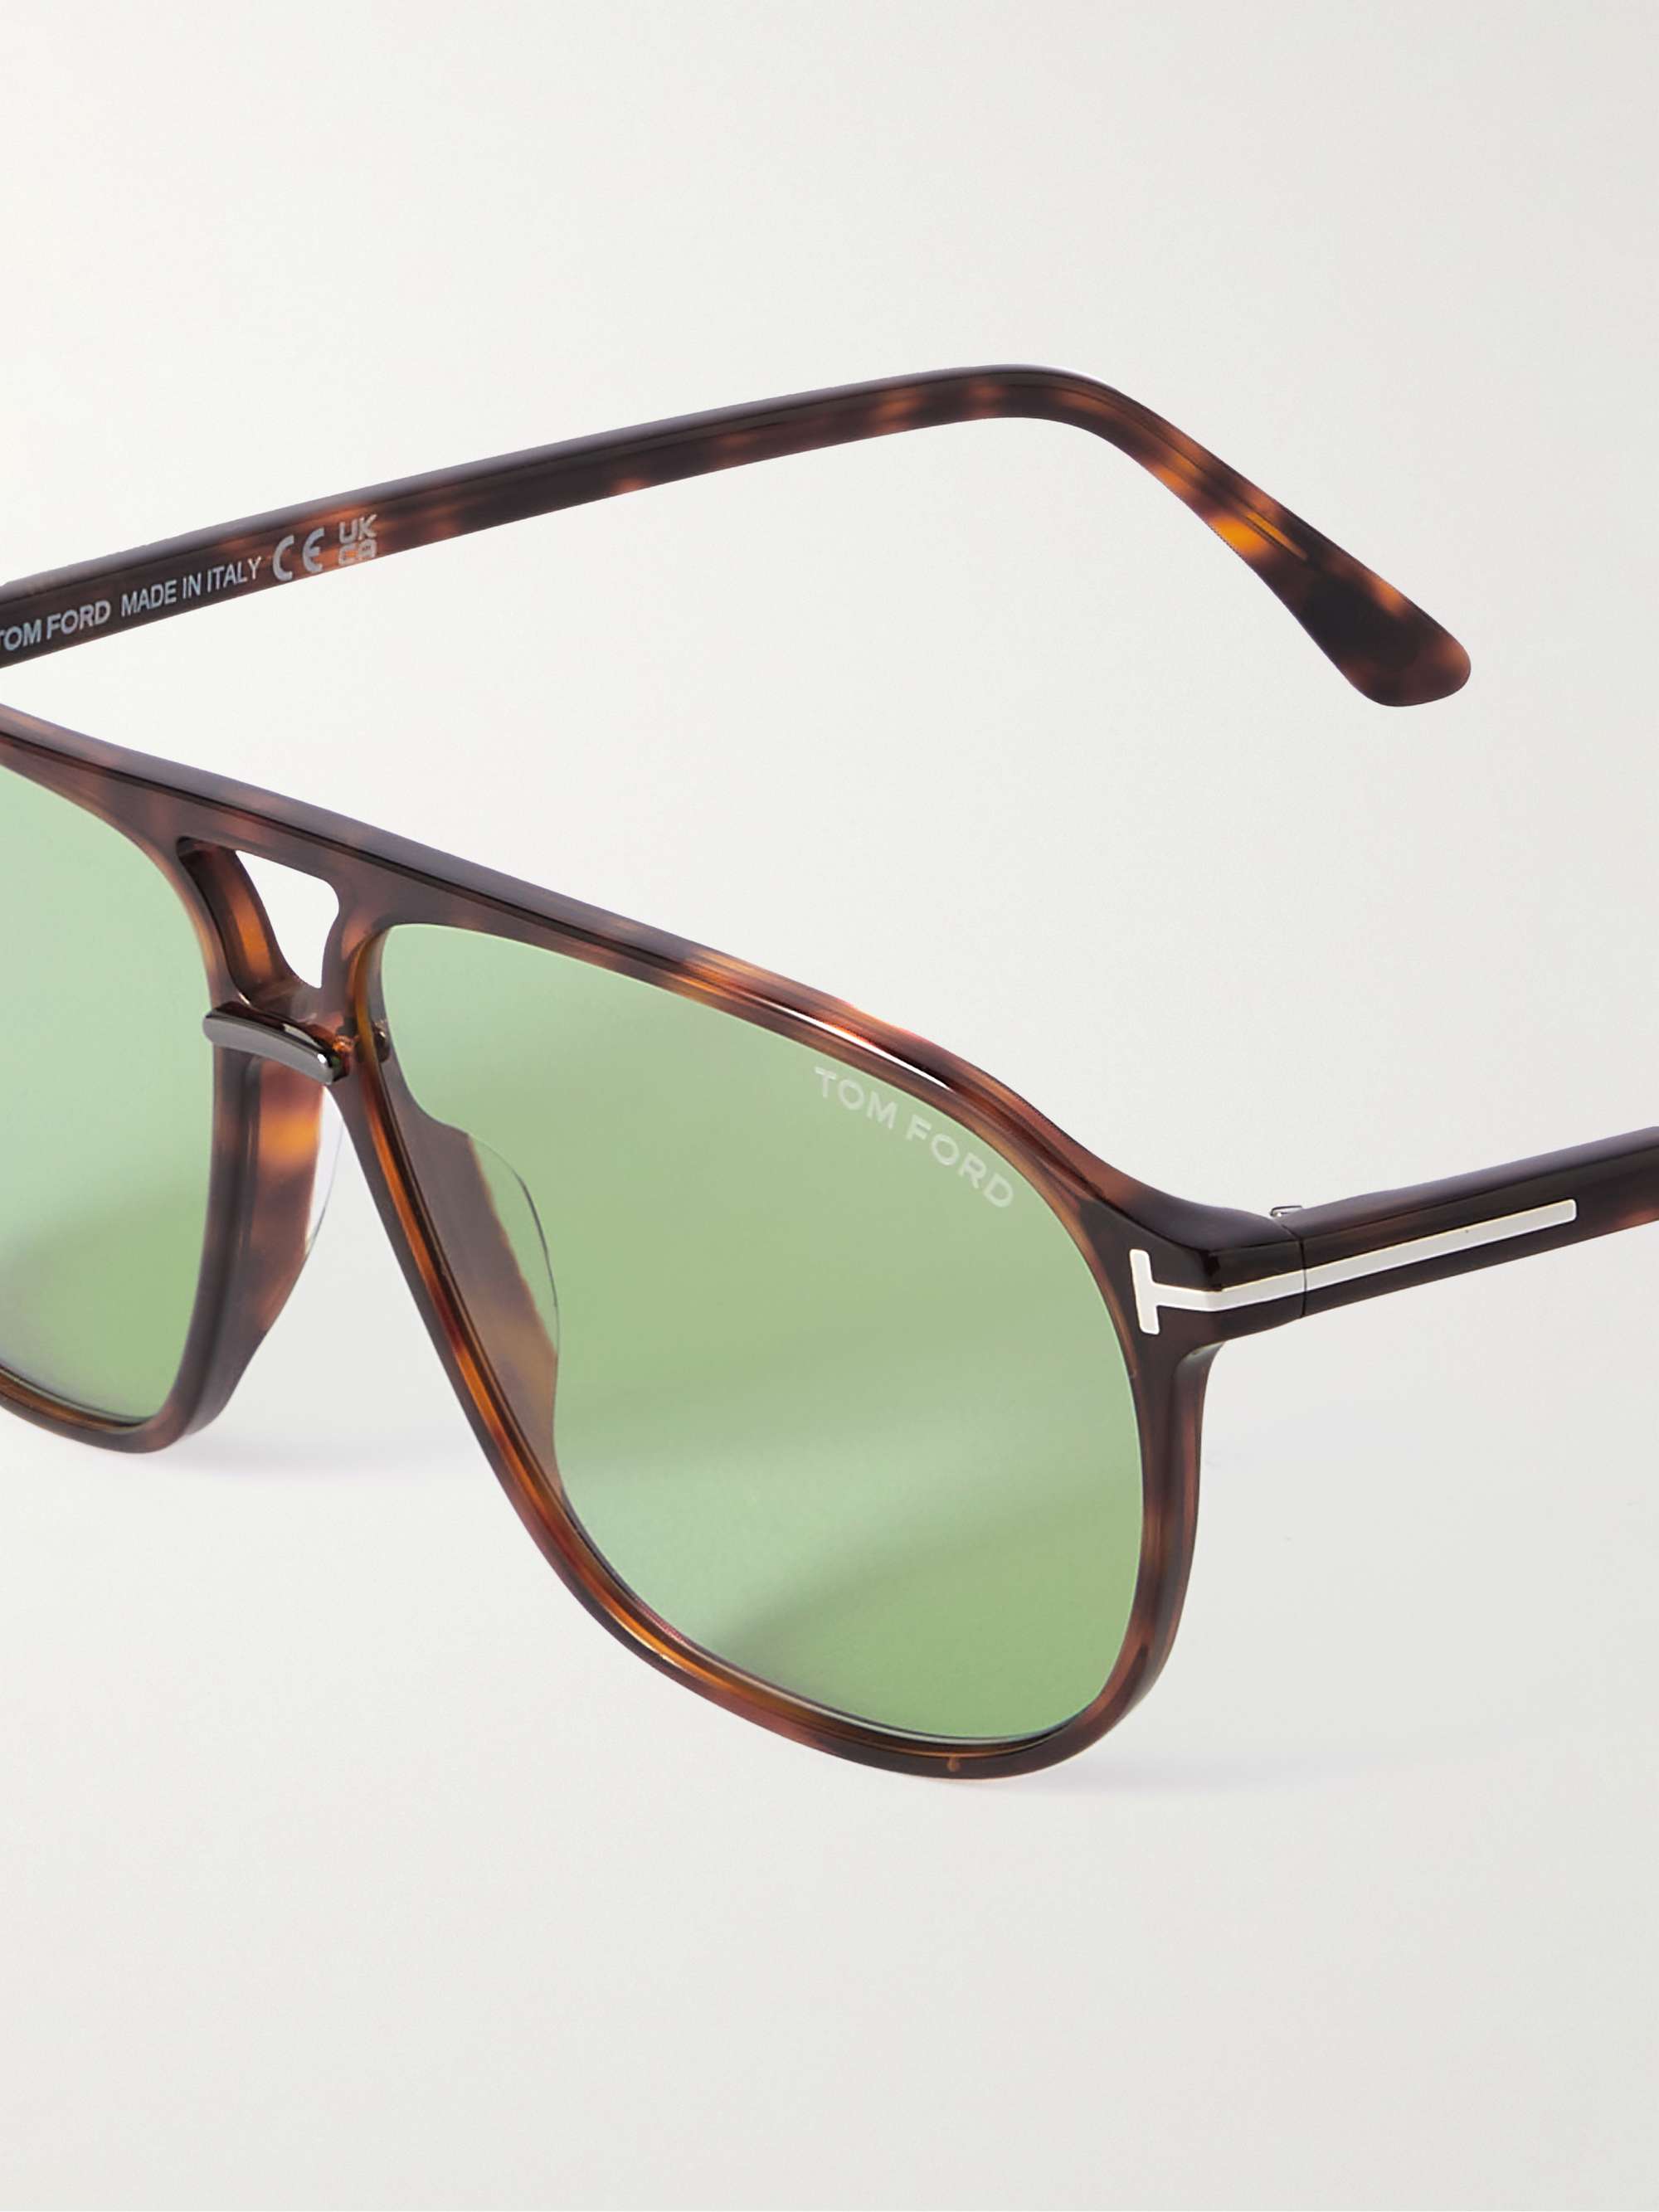 TOM FORD EYEWEAR Aviator-Style Tortoiseshell Acetate Sunglasses for Men |  MR PORTER